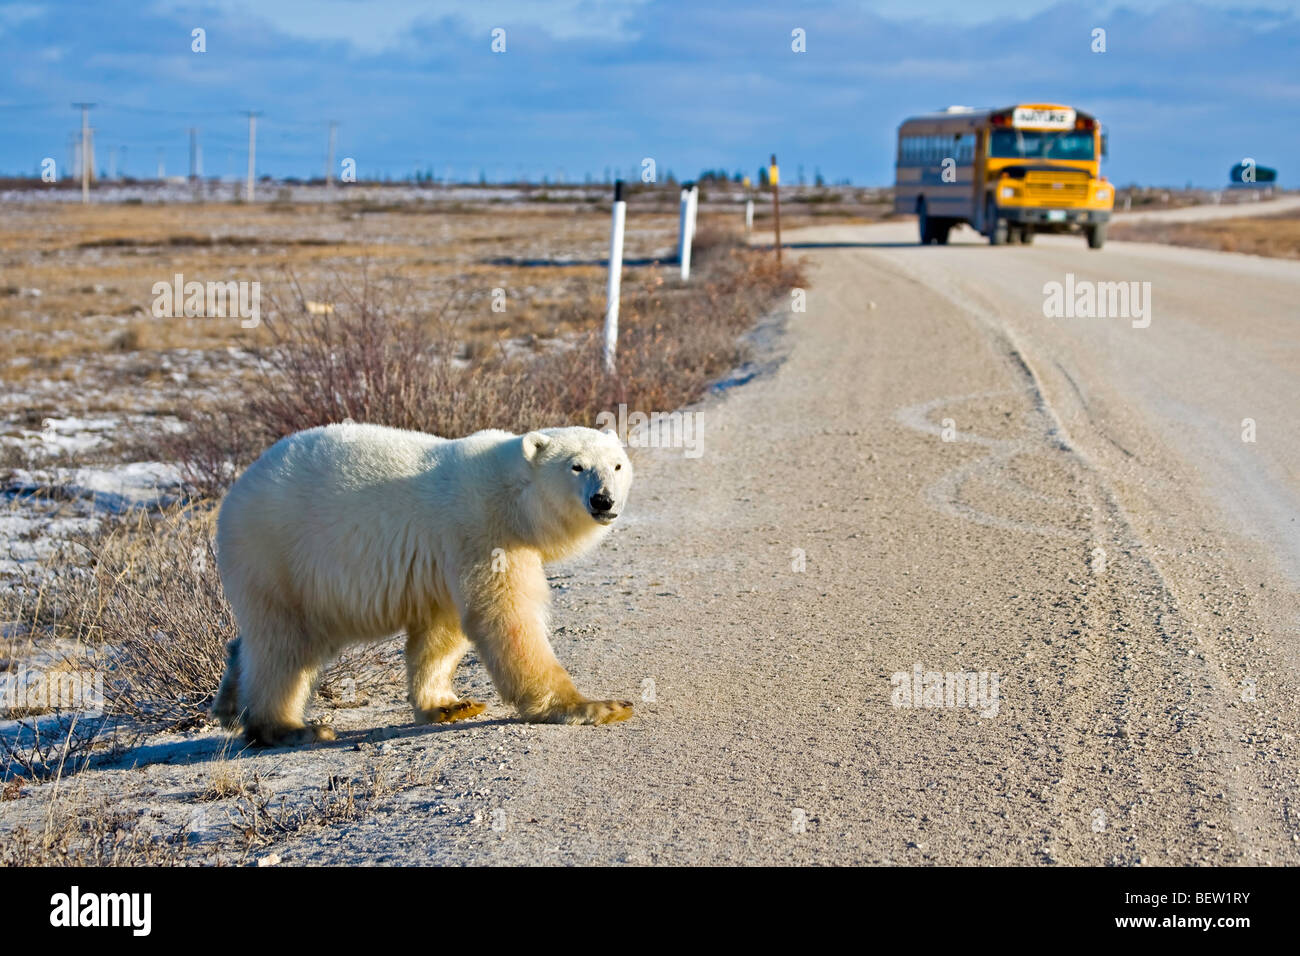 Orso polare, Ursus maritimus, attraversando la strada principale nella parte anteriore di un autobus turistico, Baia di Hudson, Churchill, Manitoba, Canada. Foto Stock